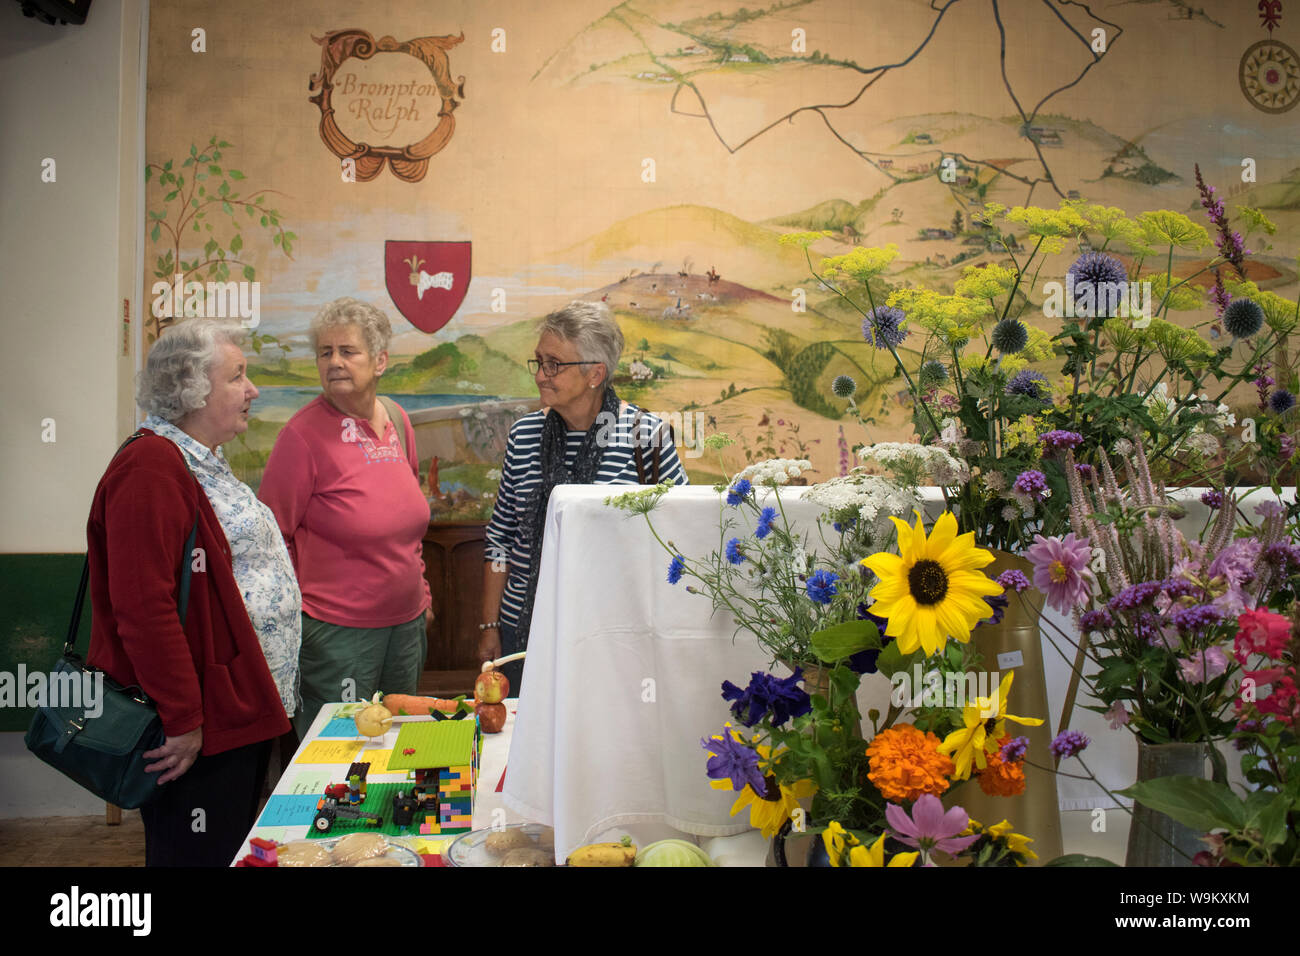 Village Flower show 2010s UK. Seniors femmes femmes à un événement communautaire Brompton Ralph, 2019 Somerset . Peinture sur le village hall mur est de leur communauté dans les pays de l'Ouest Angleterre HOMER SYKES Banque D'Images